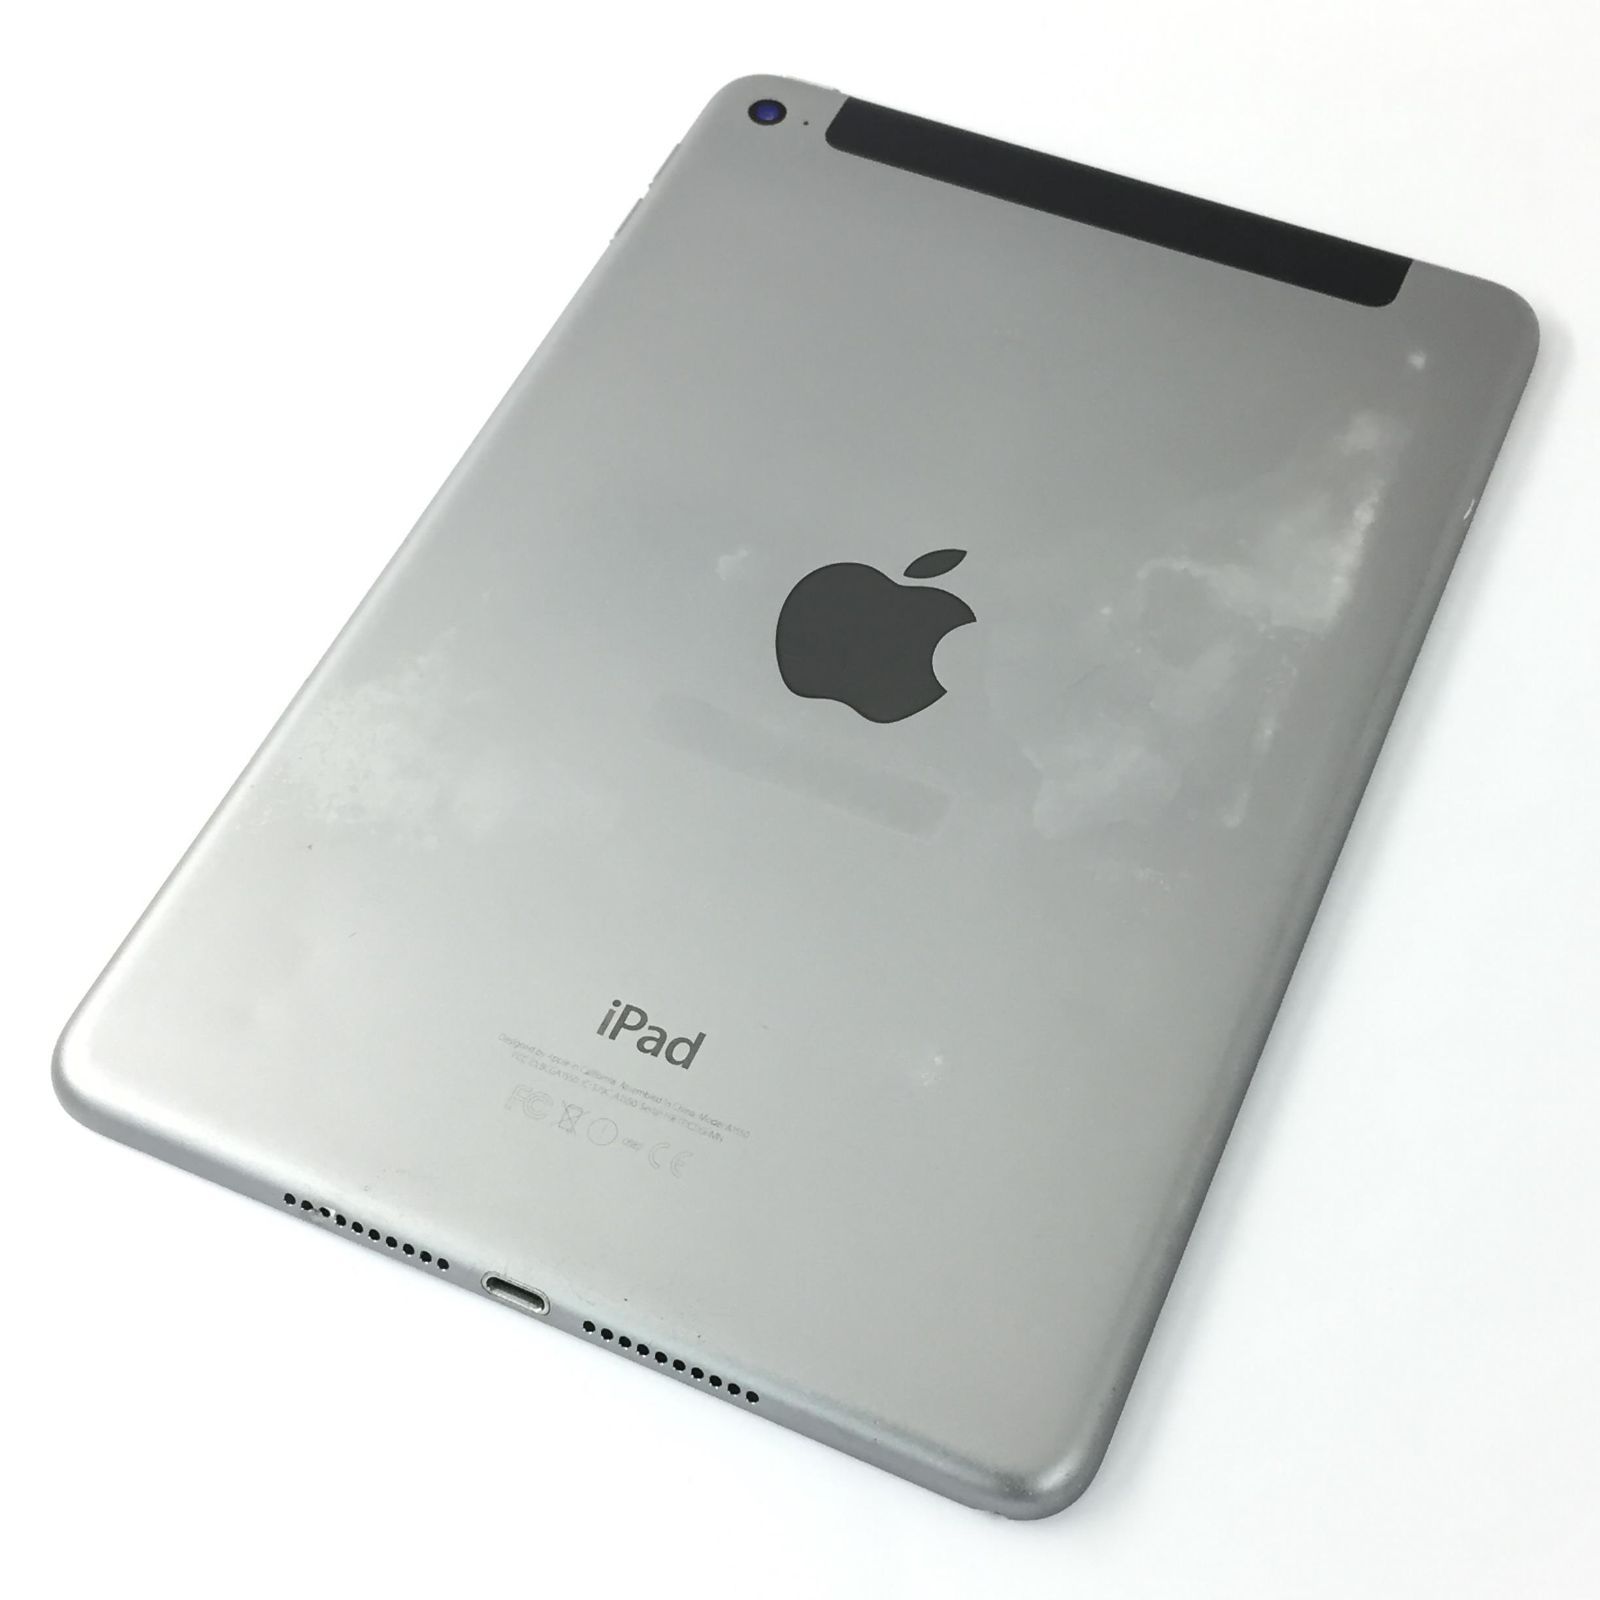 キズあり品】iPad mini 4 Wi-Fi + Cellular/128GB/354996070500815 